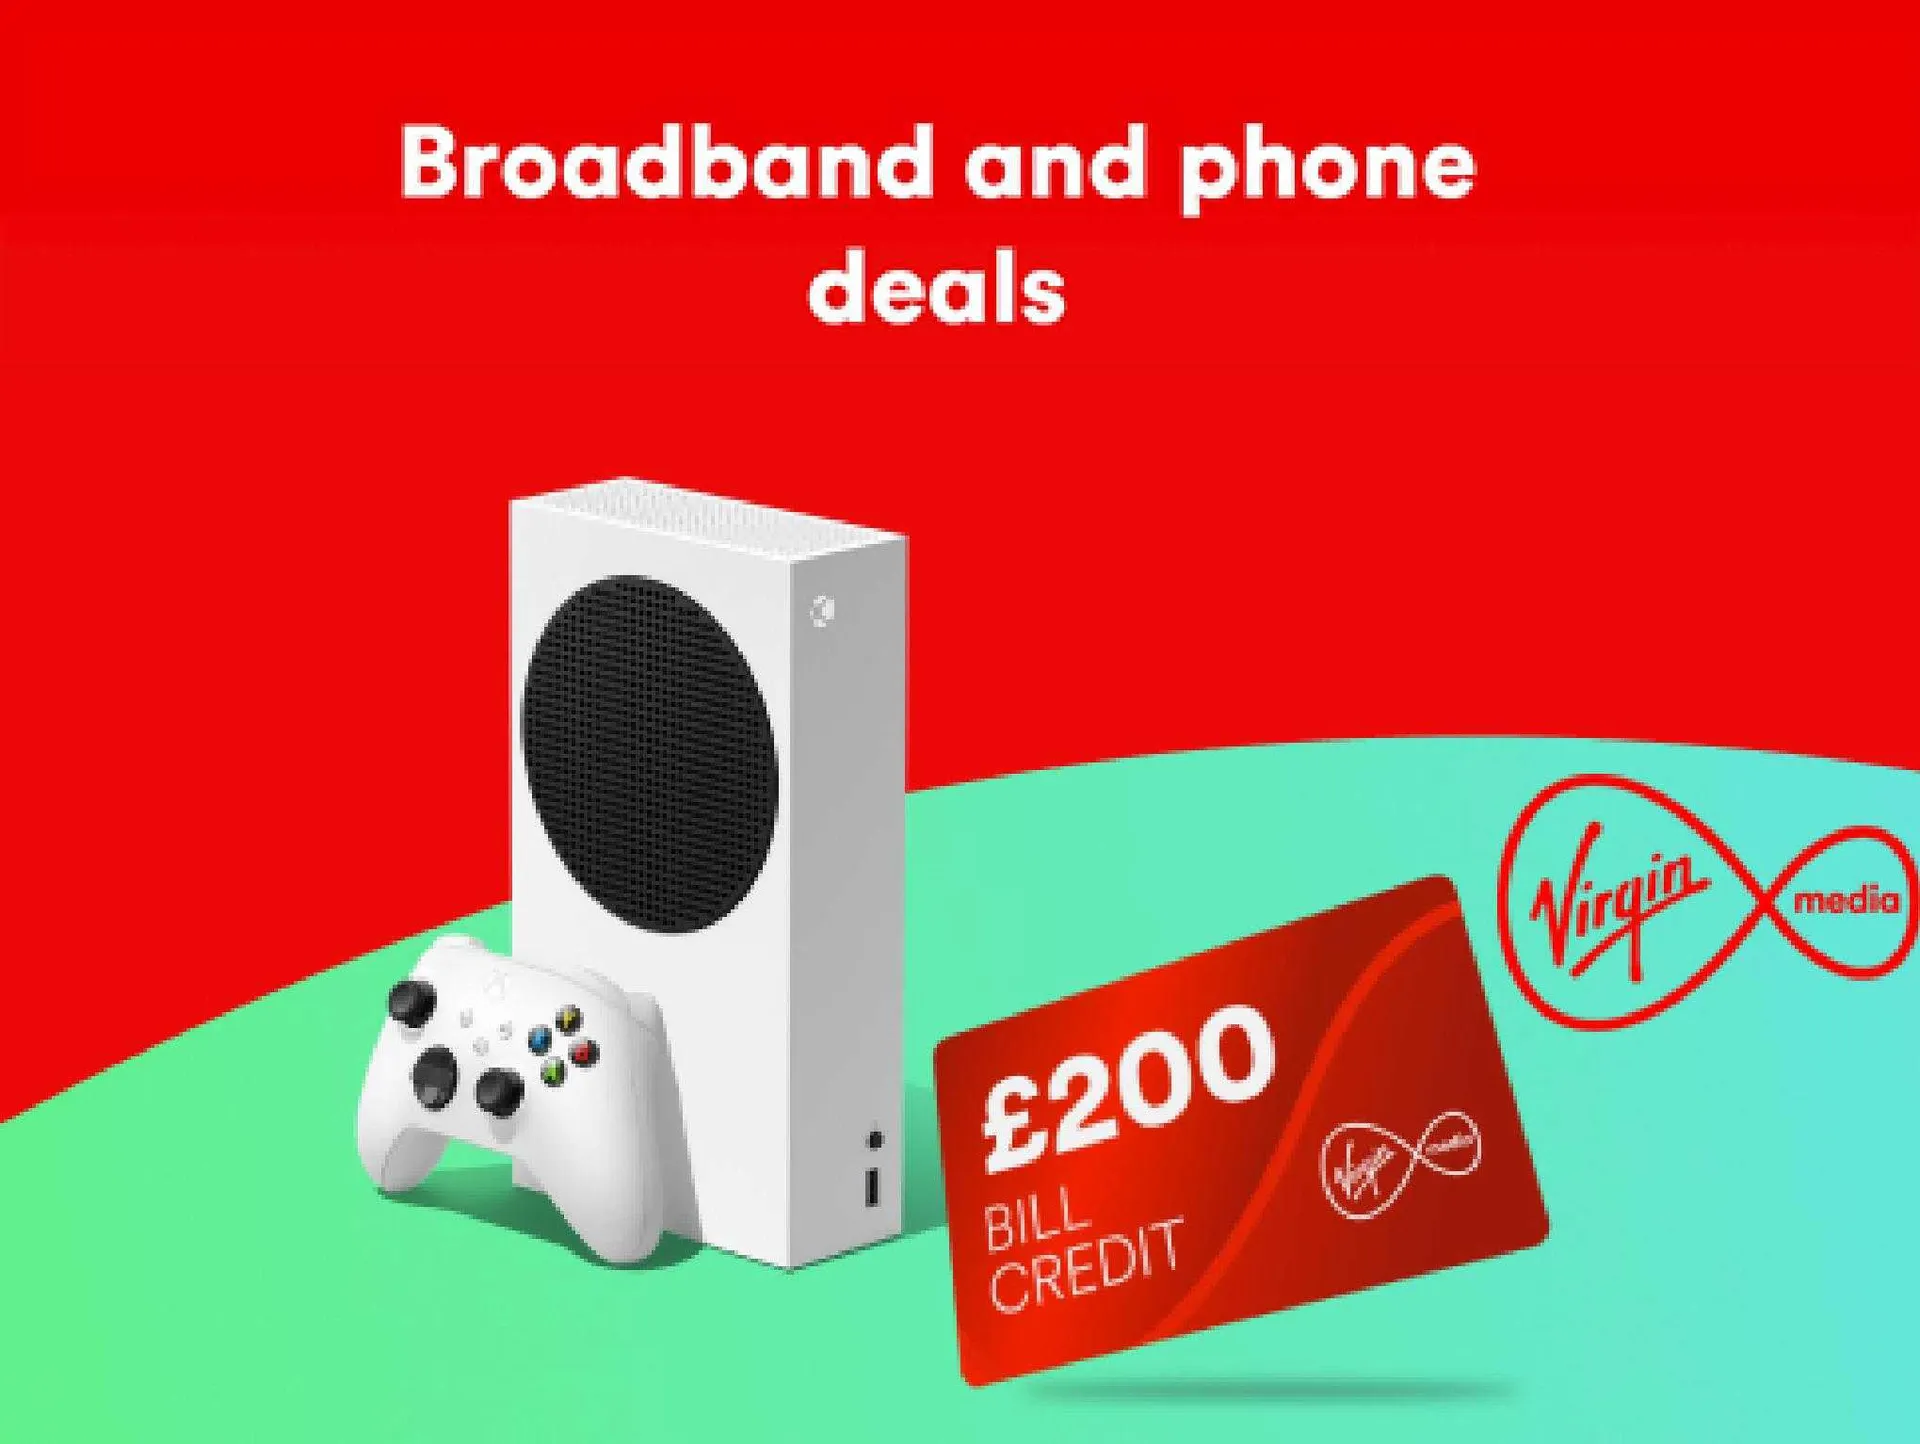 Virgin Media Weekly Offers - 1